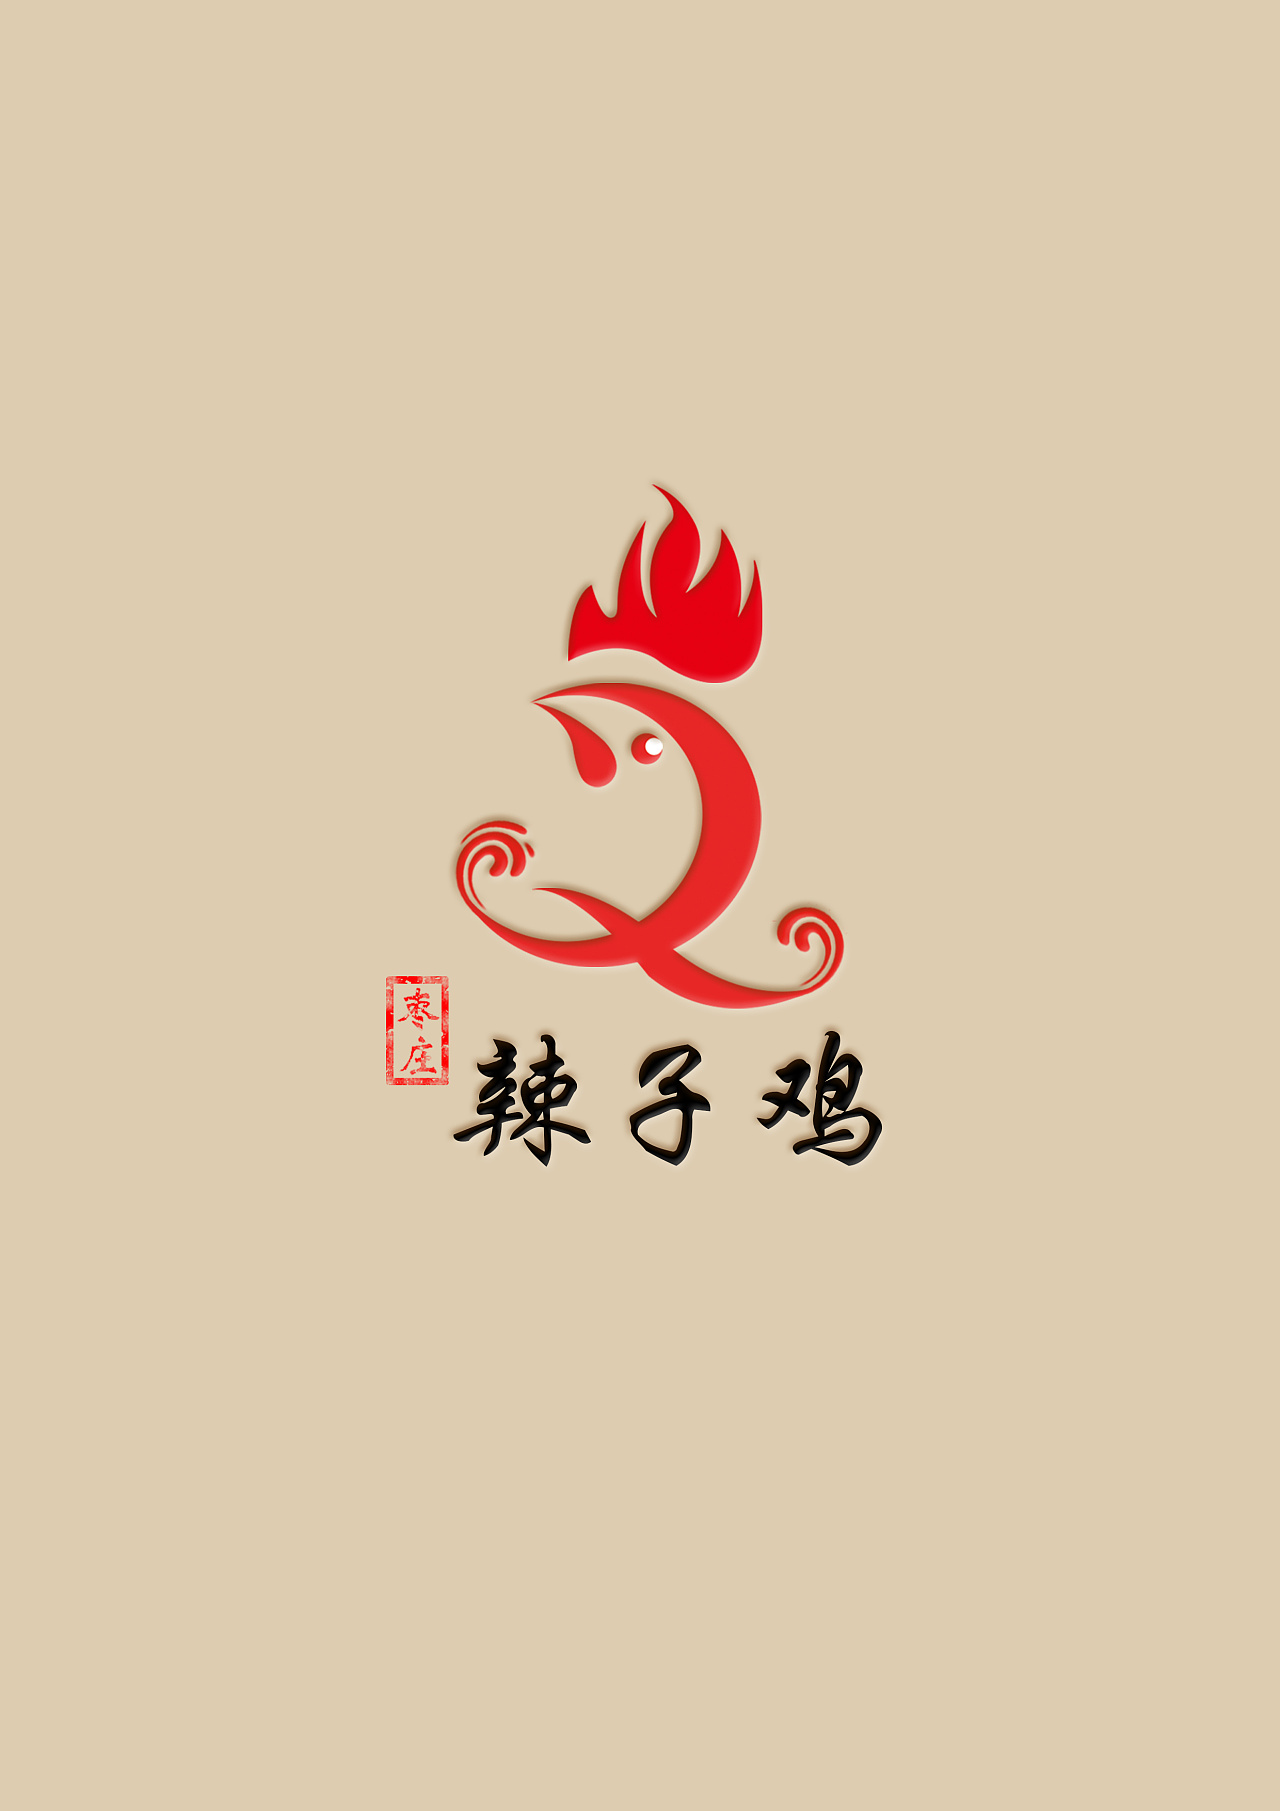 山东枣庄辣子鸡logo